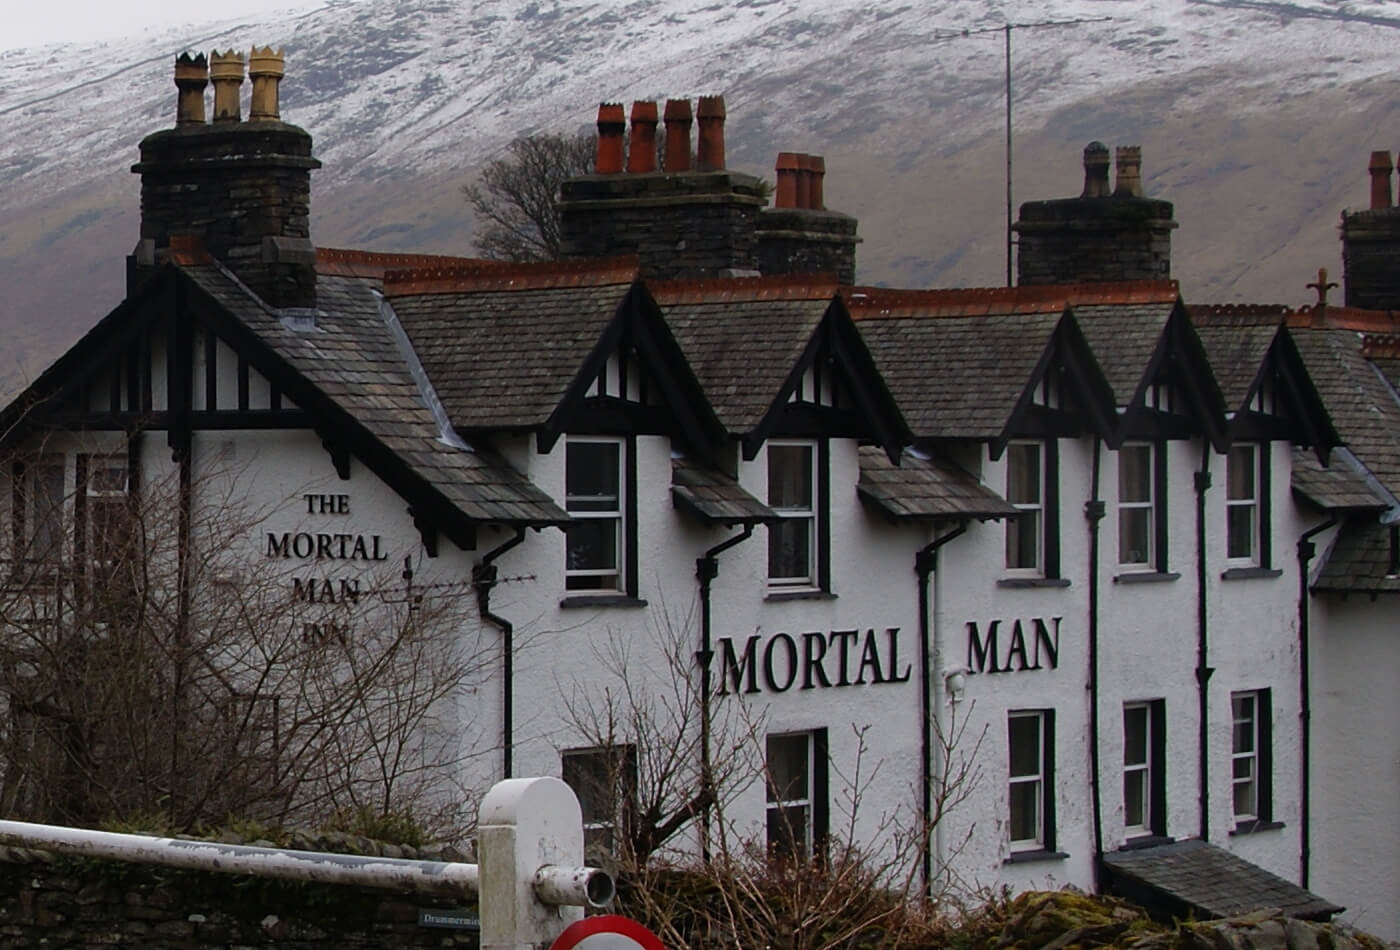 The Mortal Man pub in Troutbeck